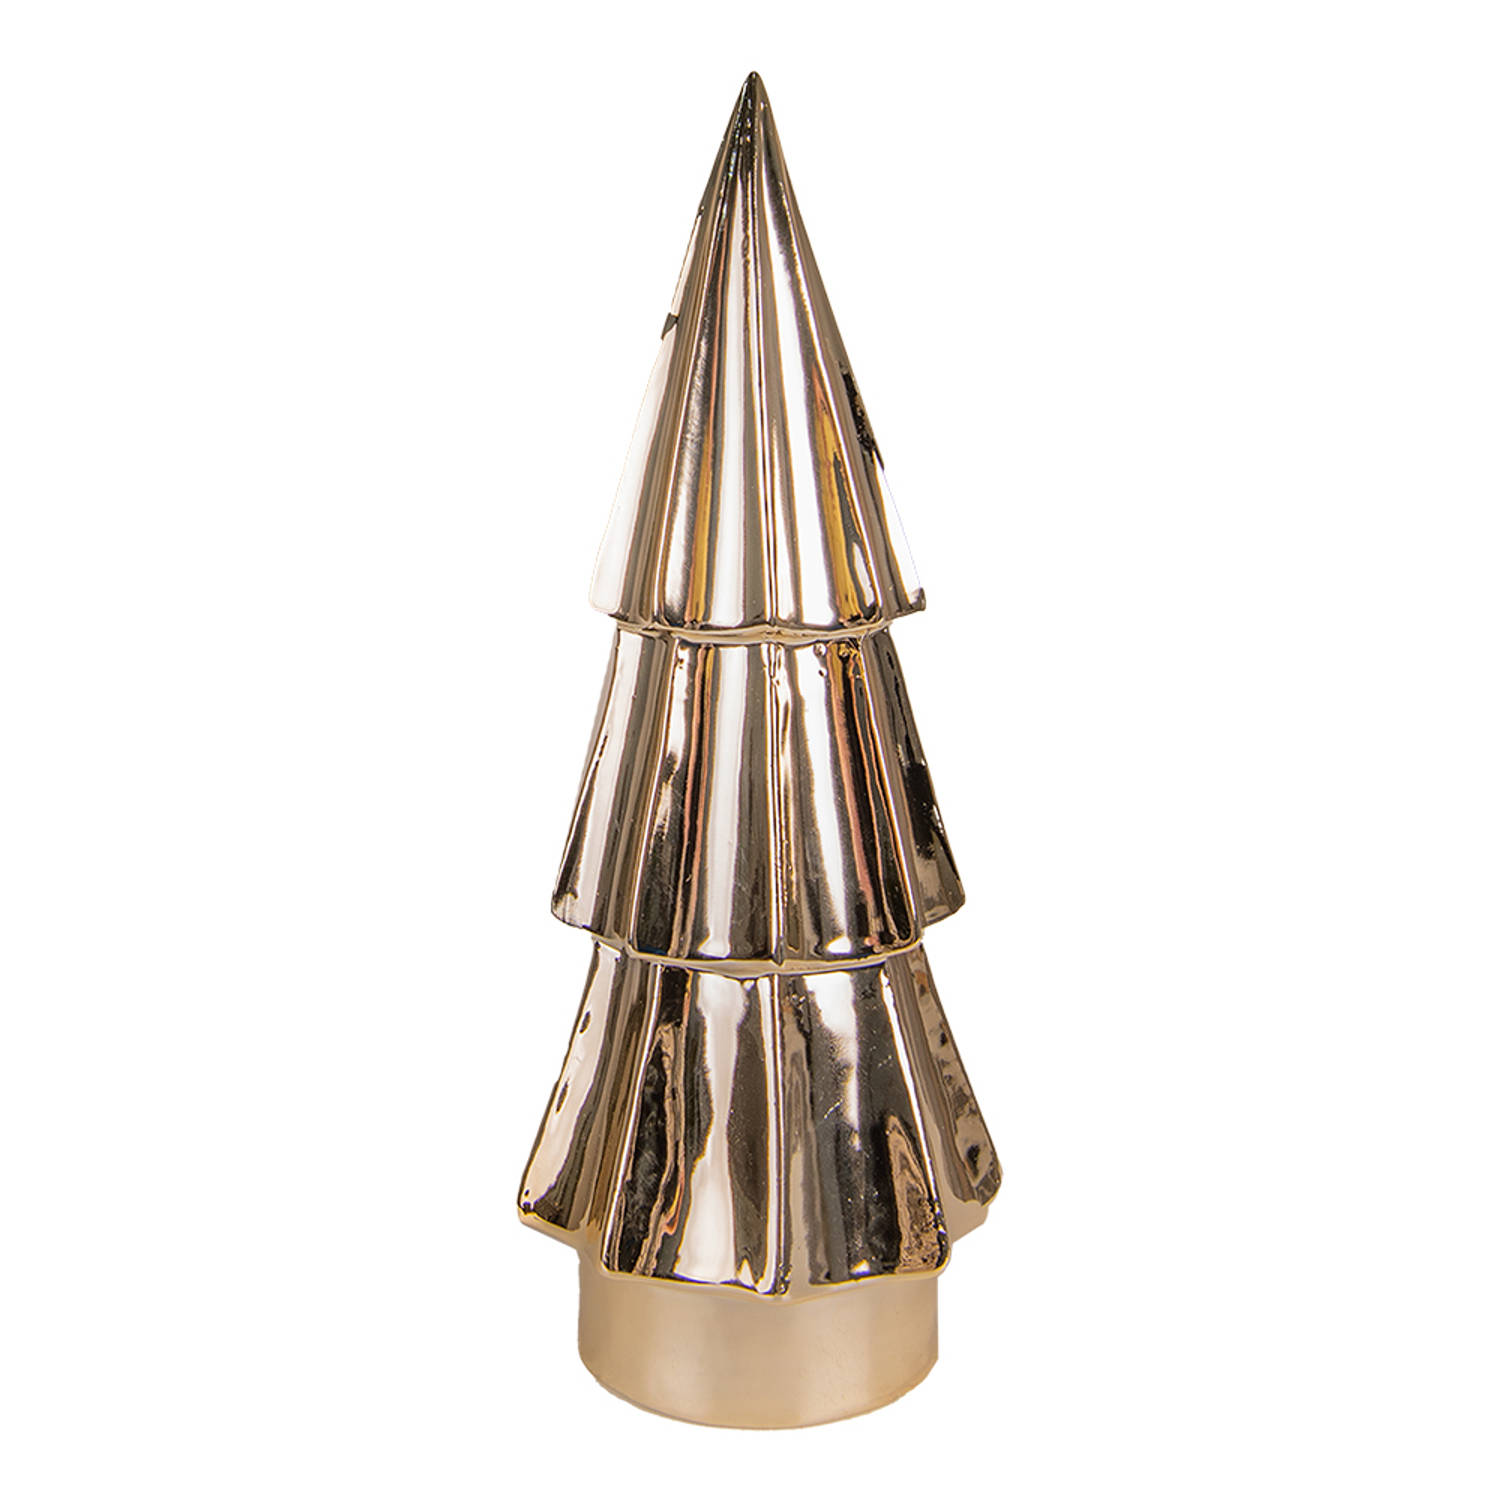 HAES DECO - Decoratieve Kerstboom - Formaat Ø 6x16 cm - Kleur Goudkleurig - Materiaal Porselein - Kerstversiering, Kerstdecoratie